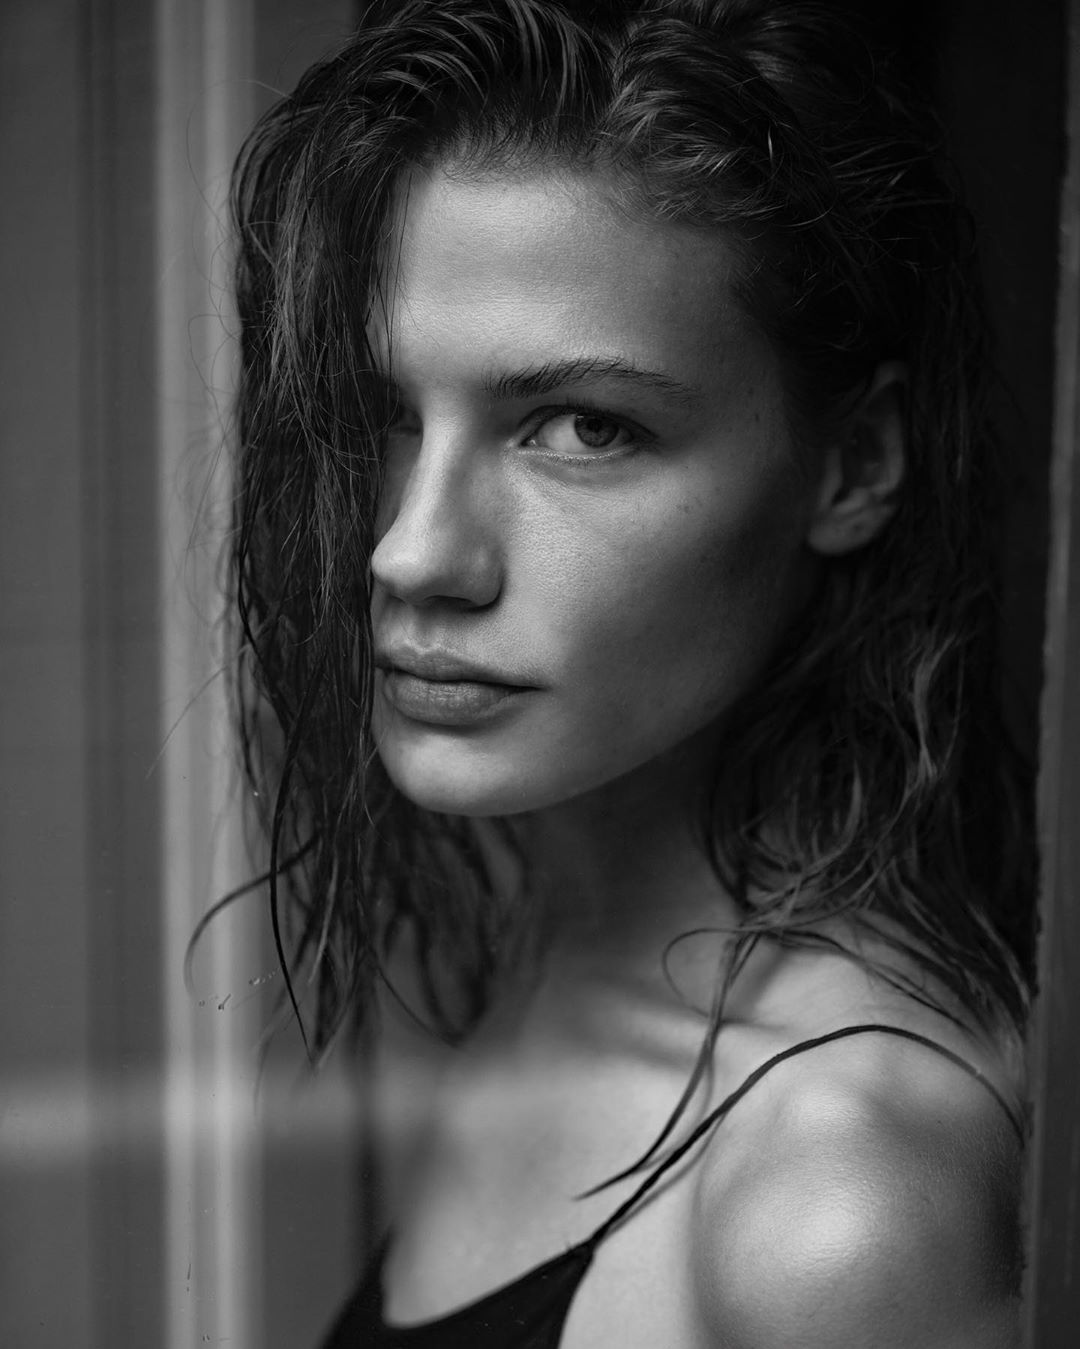 Русская модель Полина Грошева - очень красивая девушка с правильными... gos...